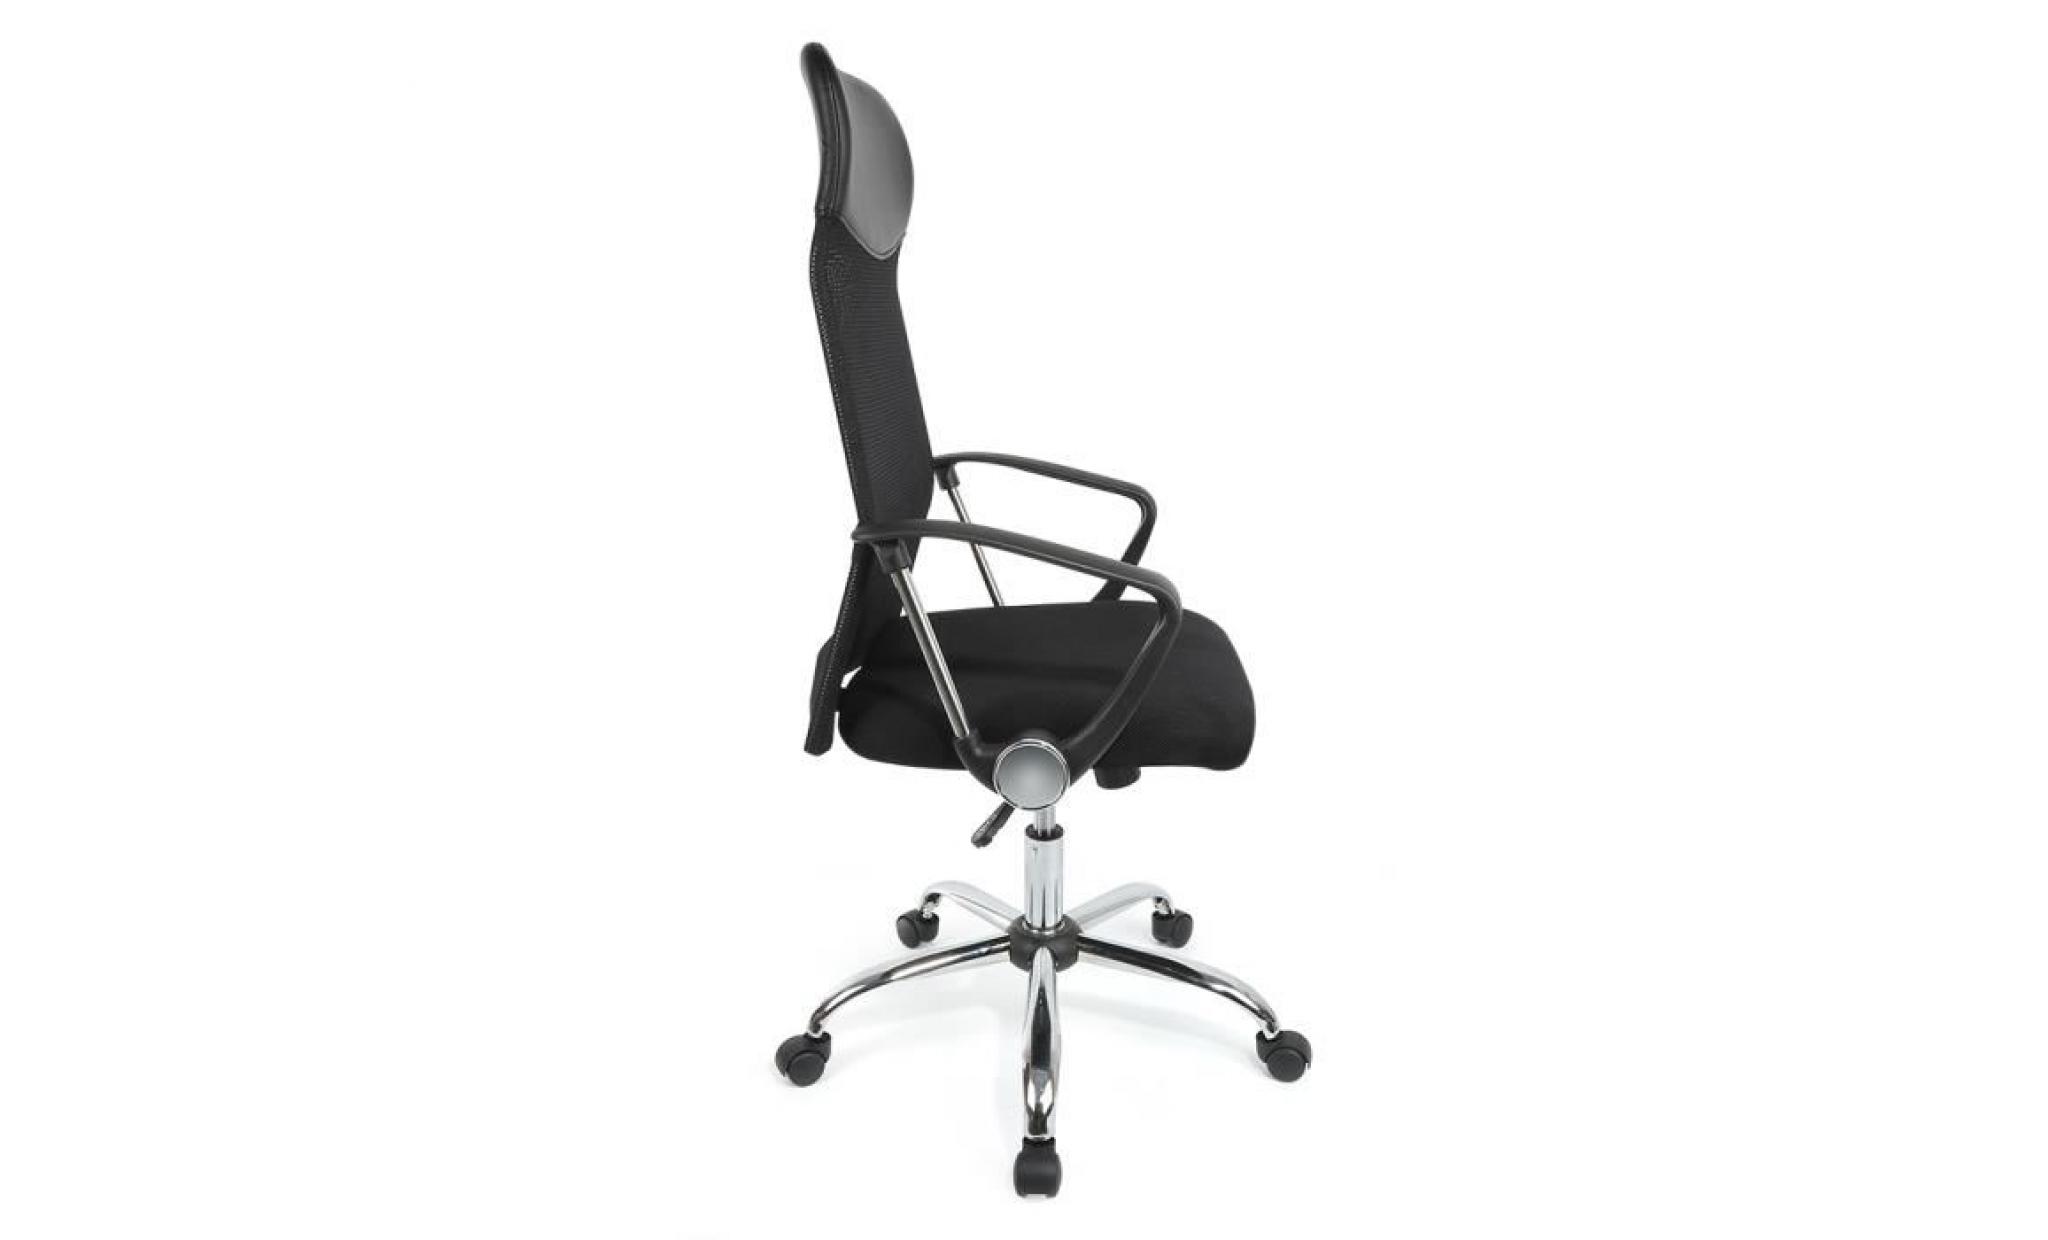 kangfun fauteuil de bureau en tissu noir, chaise de bureau inclinable ergonomique design moderne pas cher